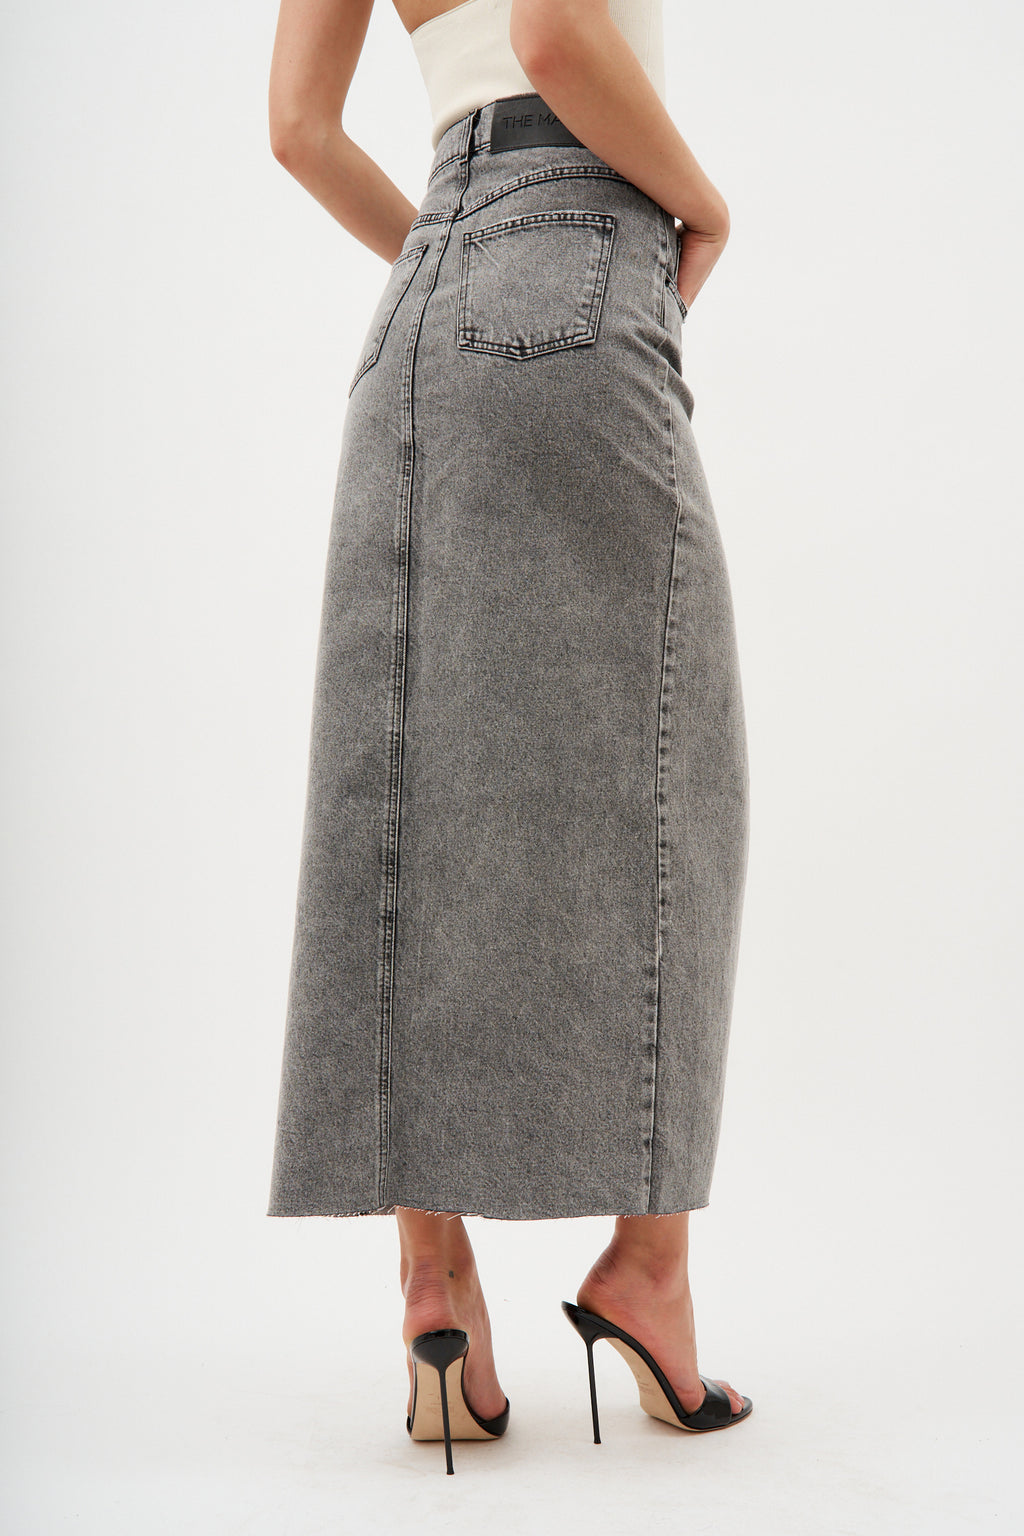 Aluta Grey Skirt